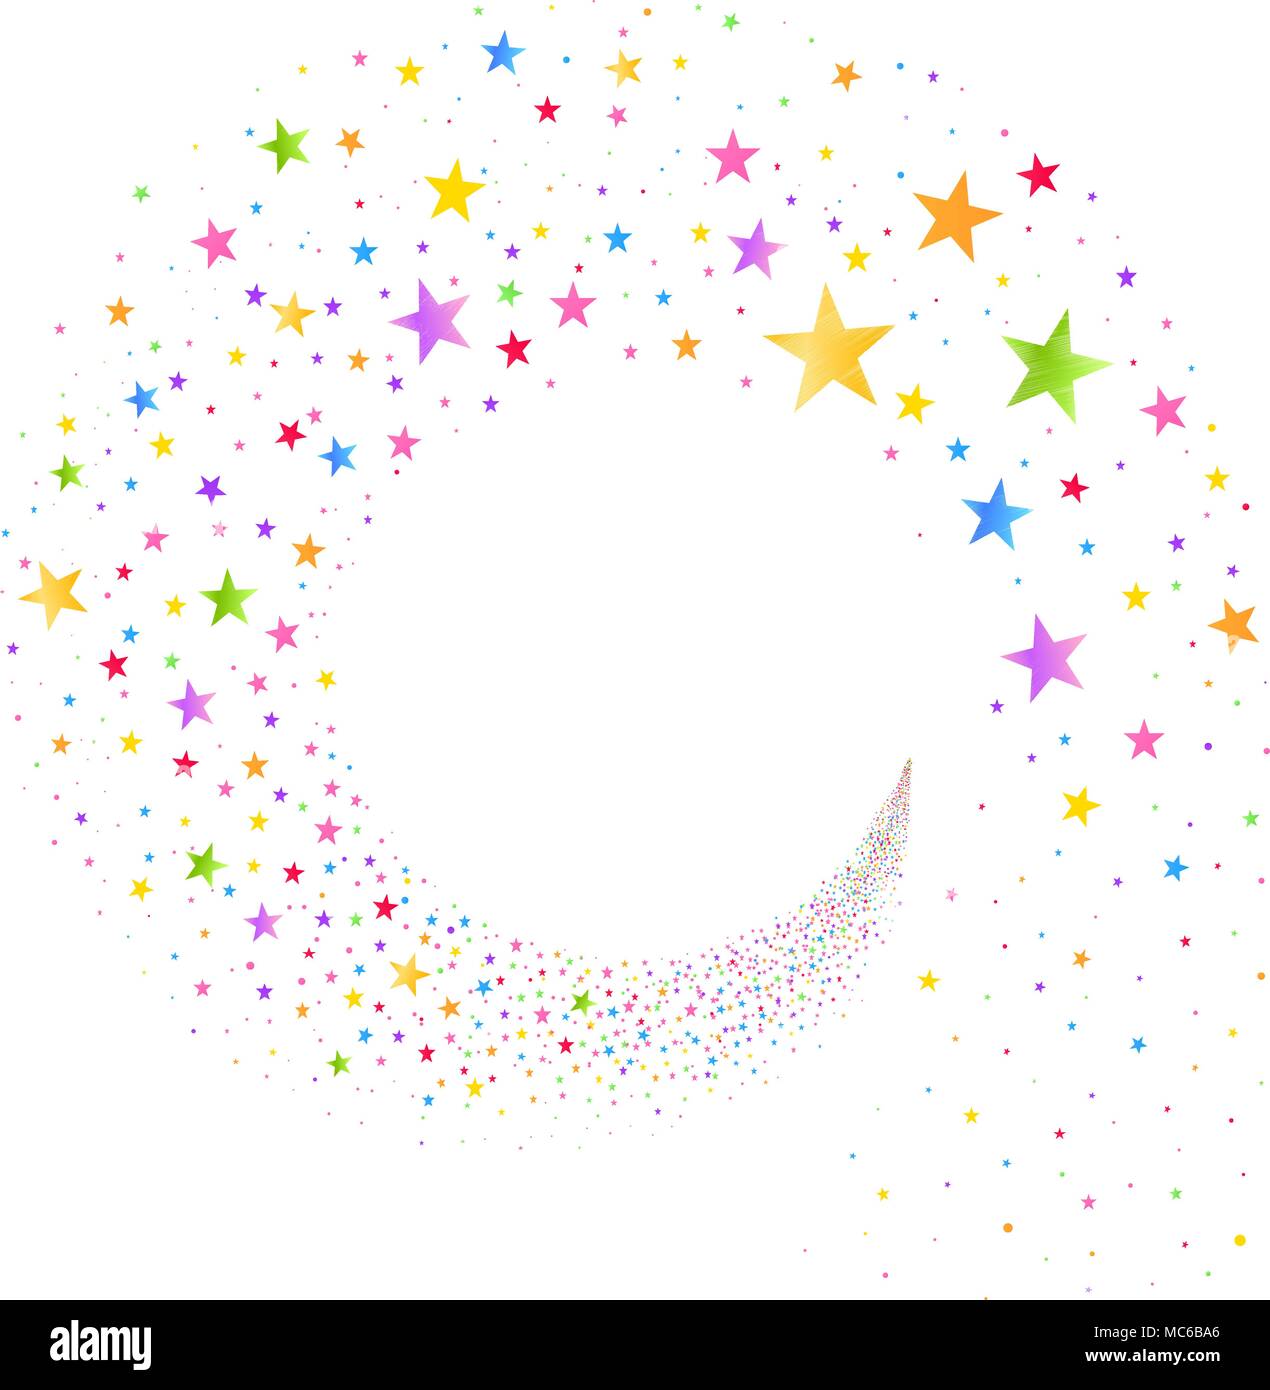 Flusso di stelle multicolore su sfondo bianco Illustrazione Vettoriale